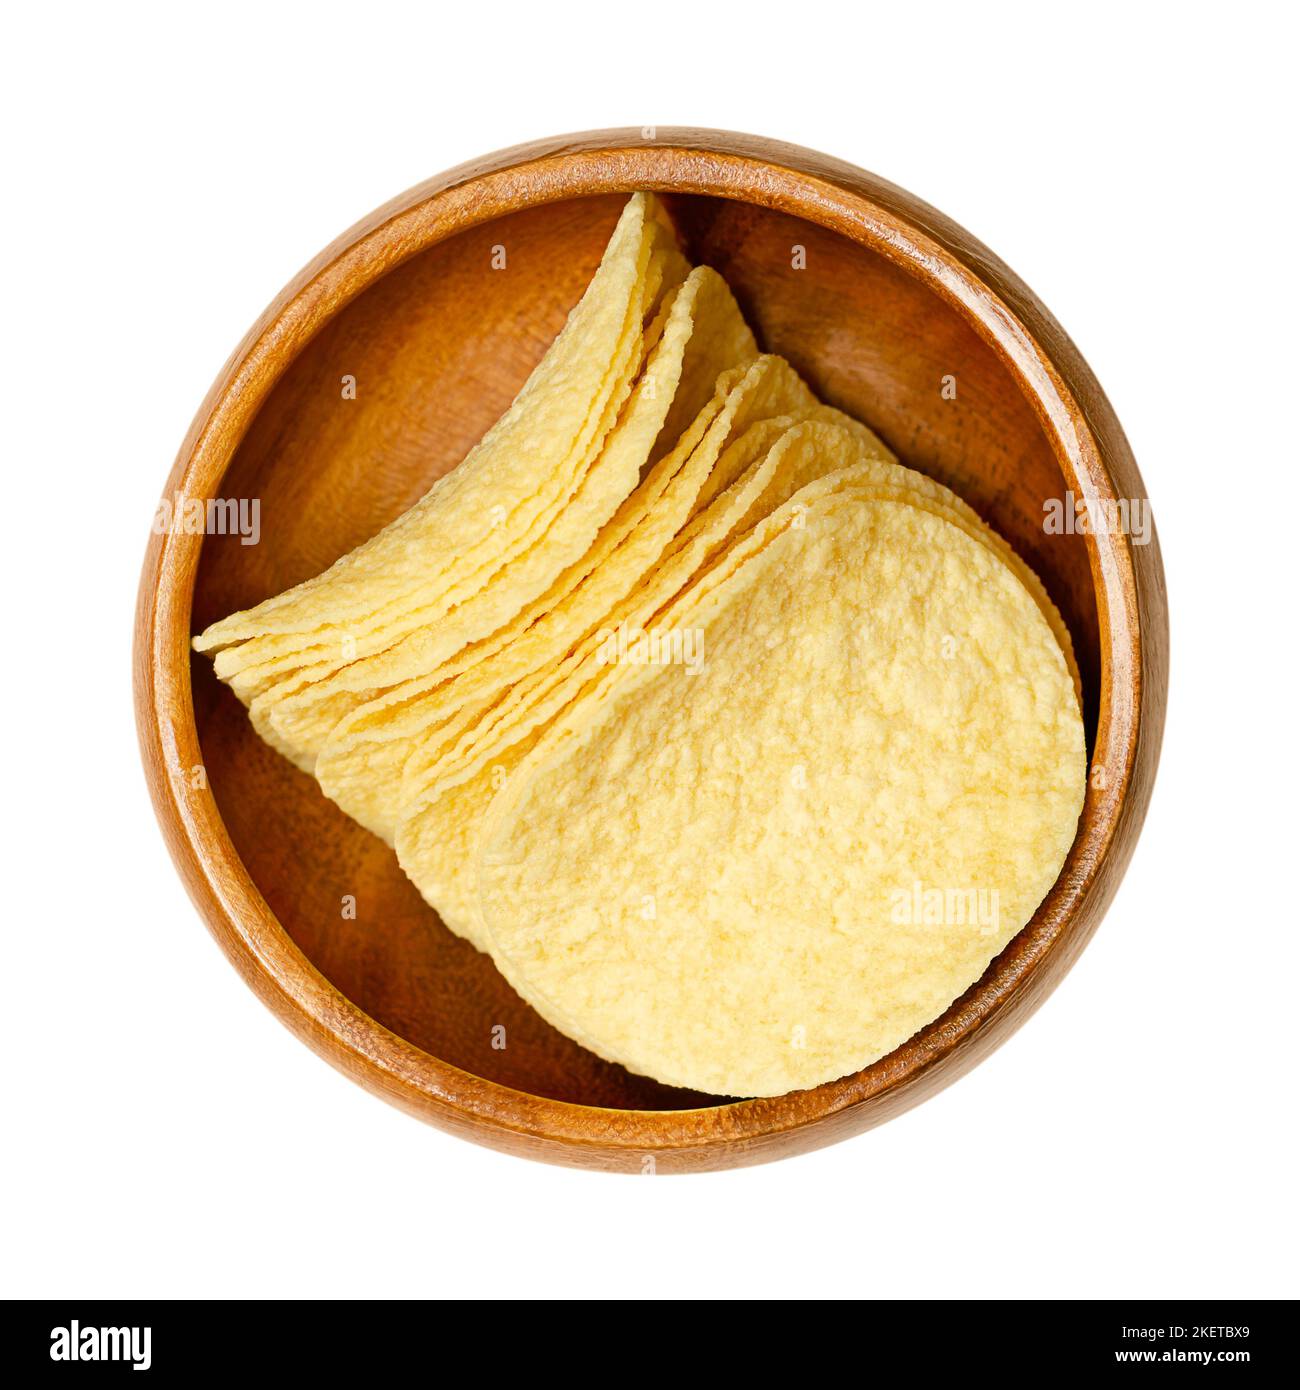 Patatine salate impilabili, in una ciotola di legno. Fette sottili di patatine fritte a base di patate americane, con un contenuto di patate al 42%. Foto Stock